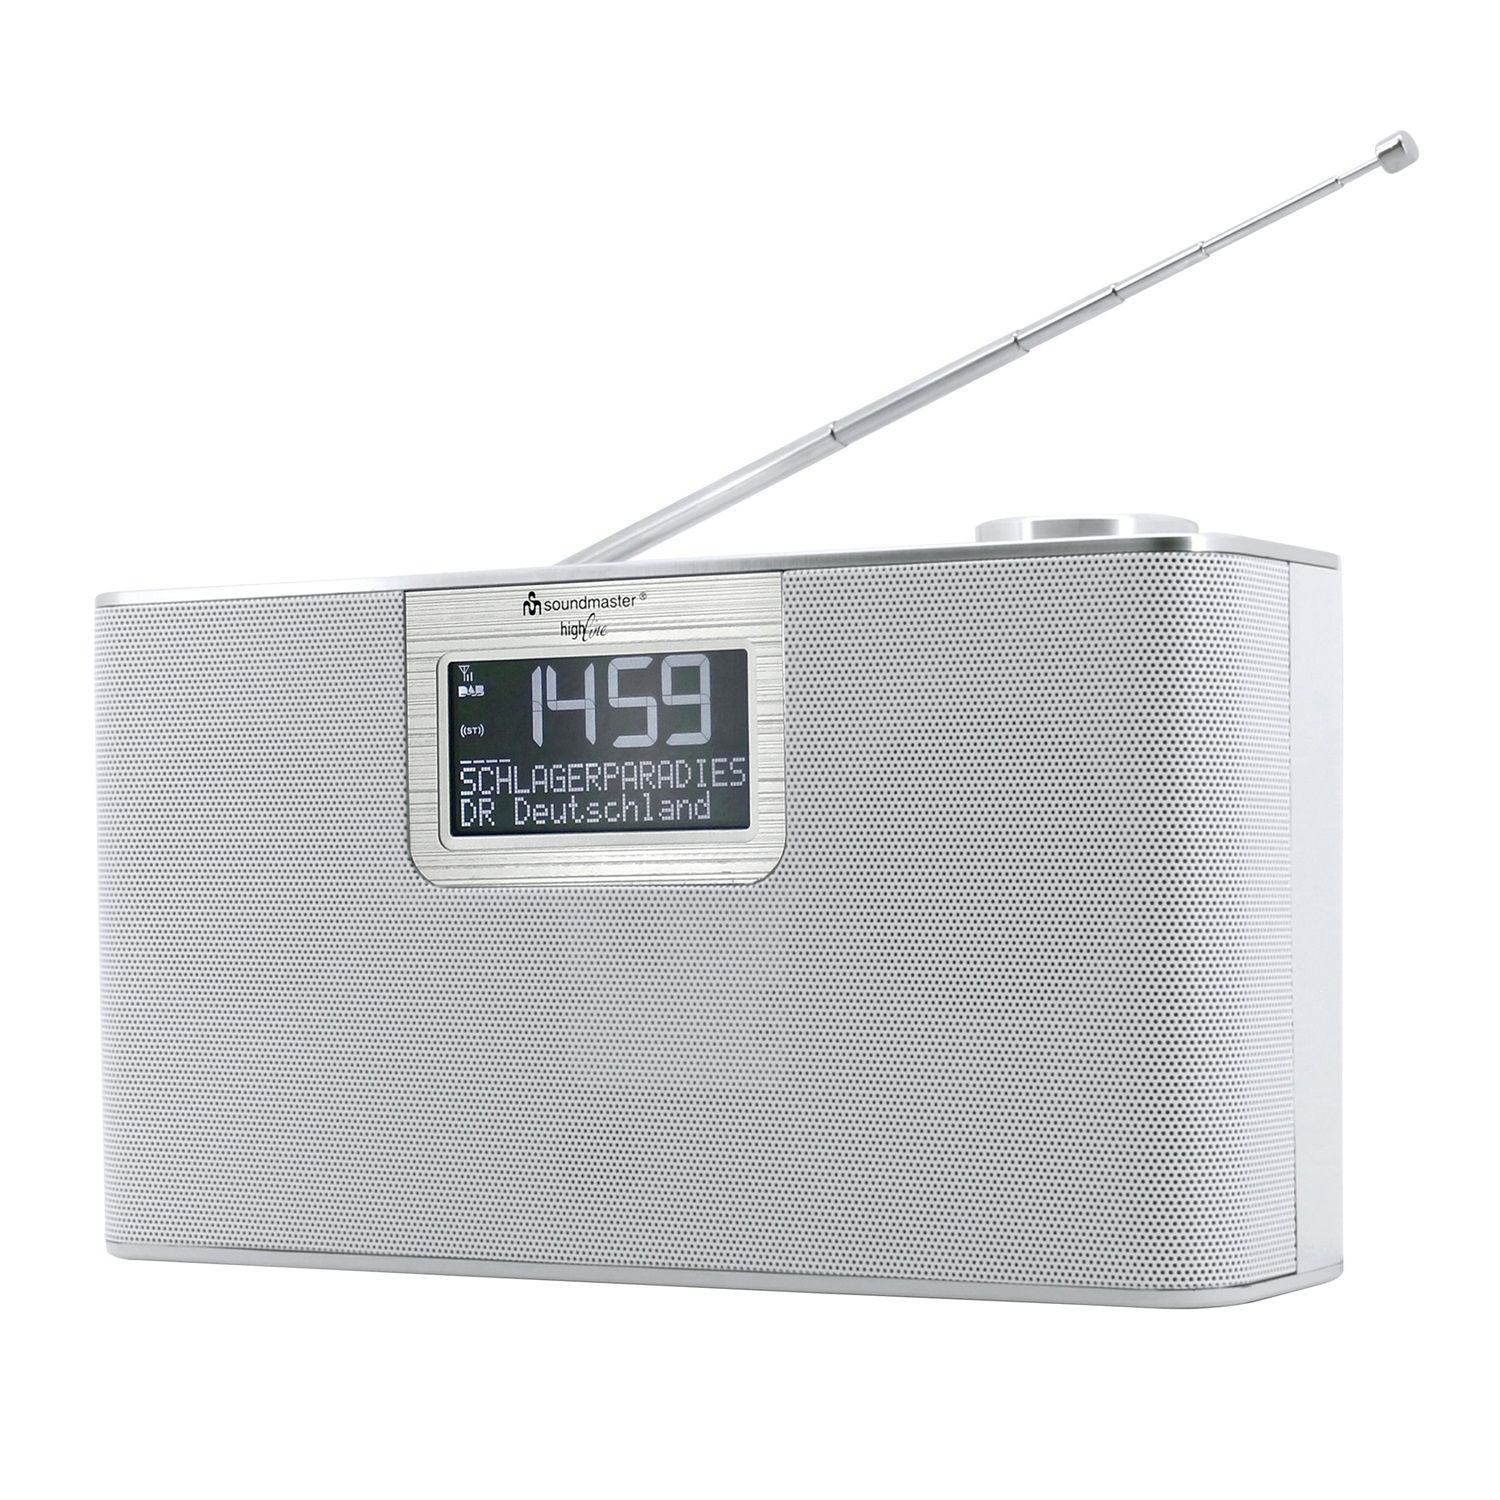 SOUNDMASTER DAB700WE DAB+, weiß FM, DAB+, AM, DAB, Multifunktionsradio, Bluetooth, FM